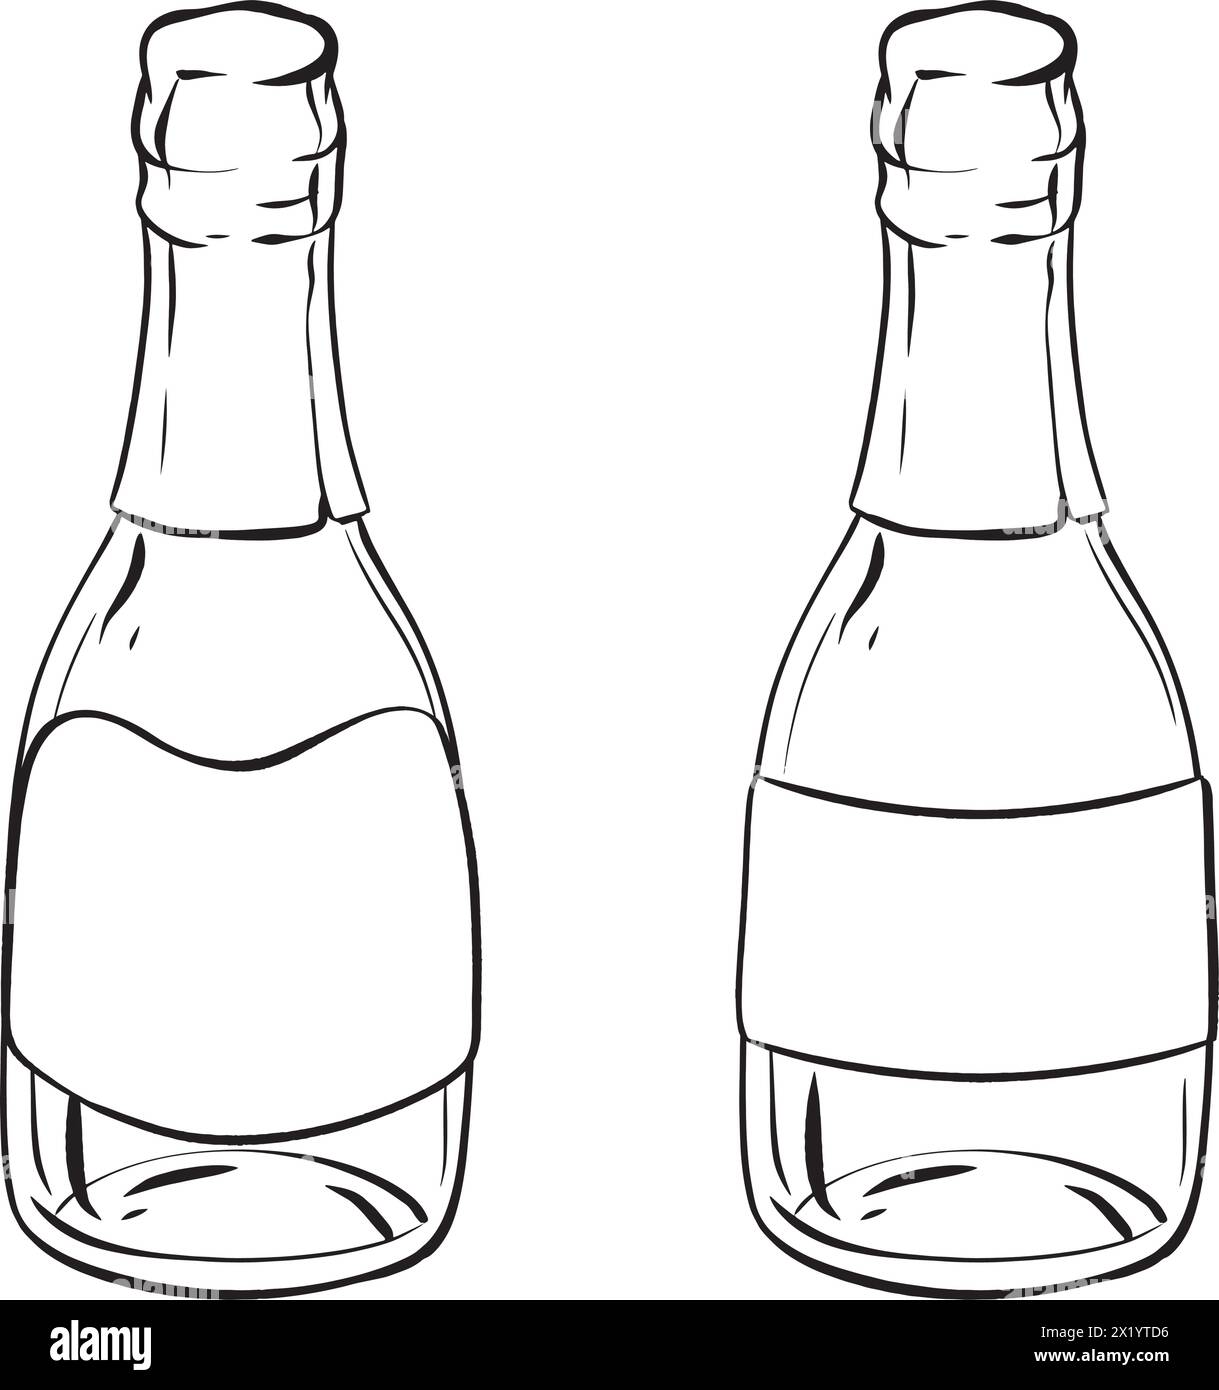 Dessin monochrome de deux bouteilles de champagne en verre Illustration de Vecteur